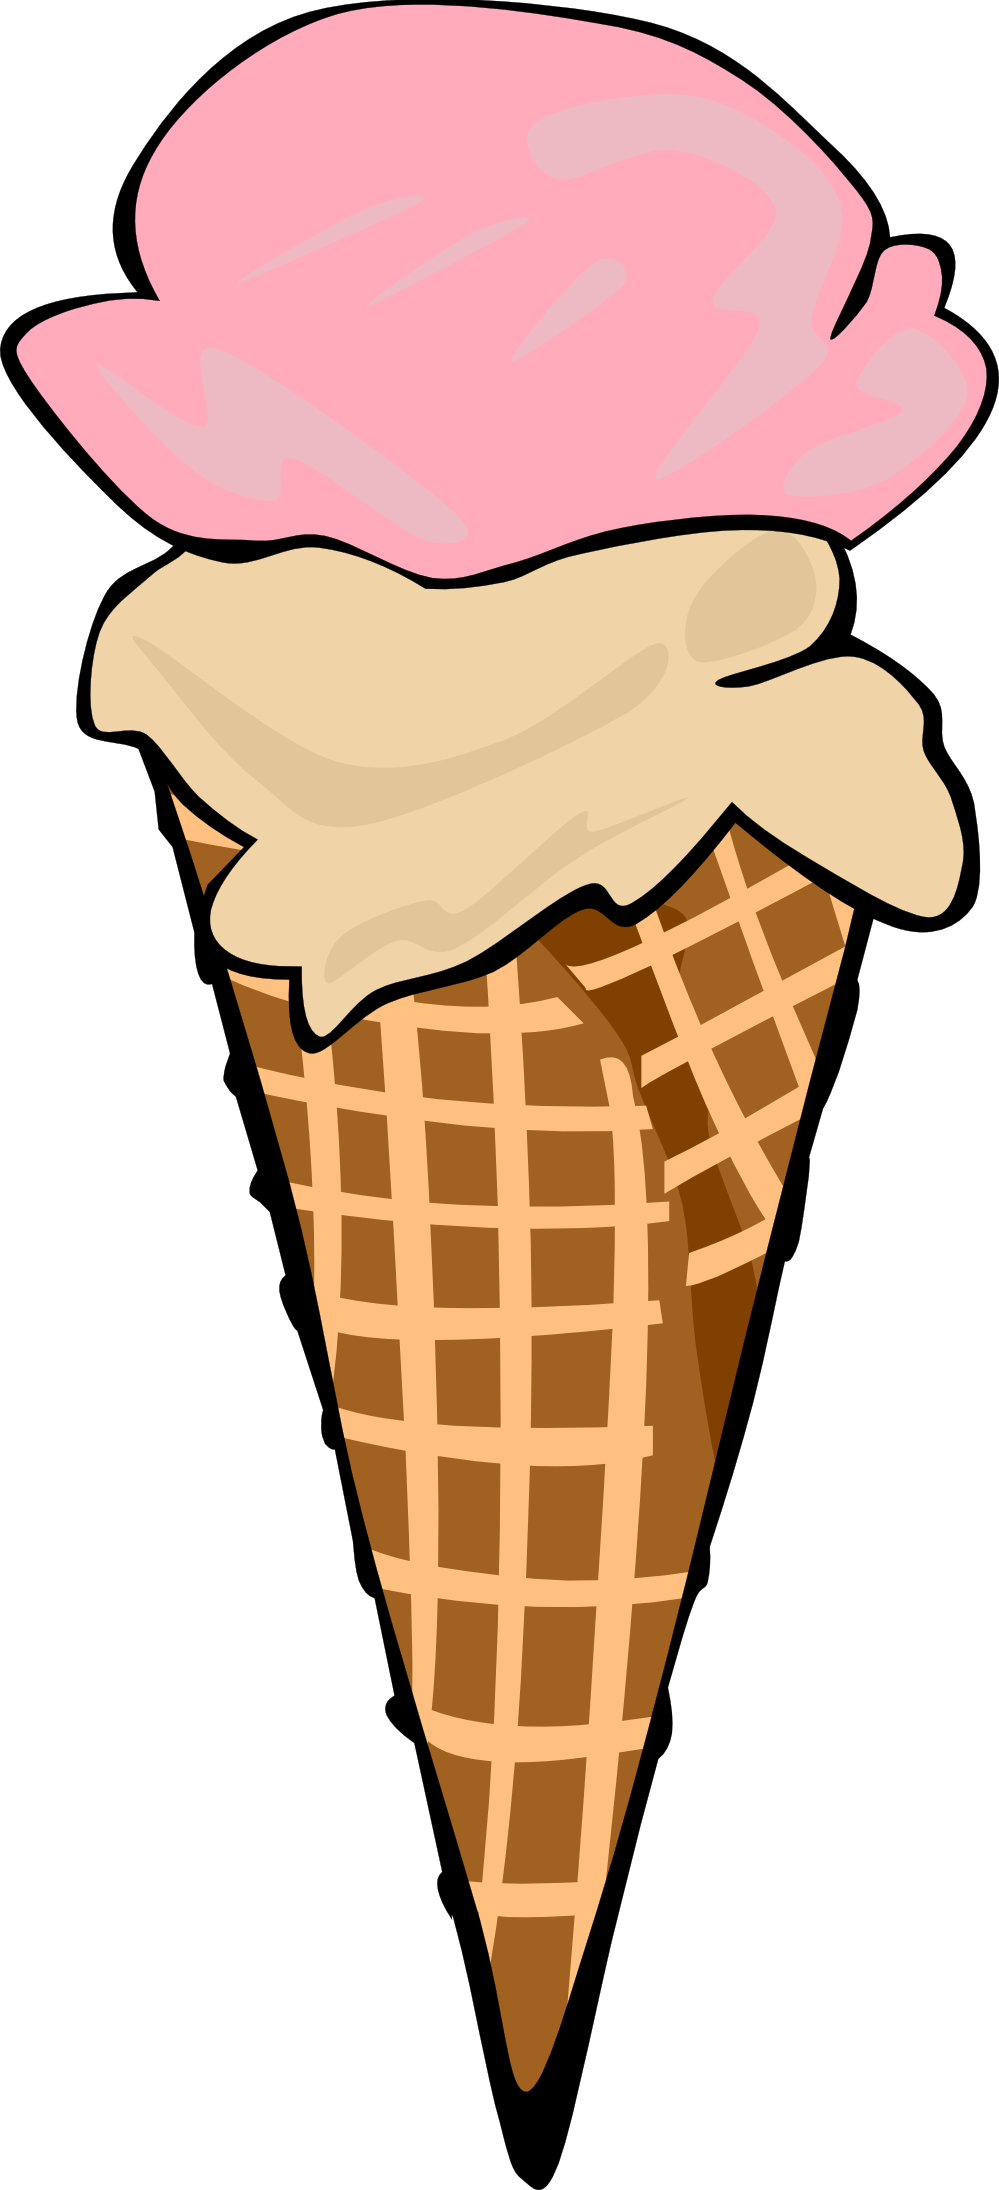 Best Ice Cream Cone Clip Art #435 - Clipartion.com